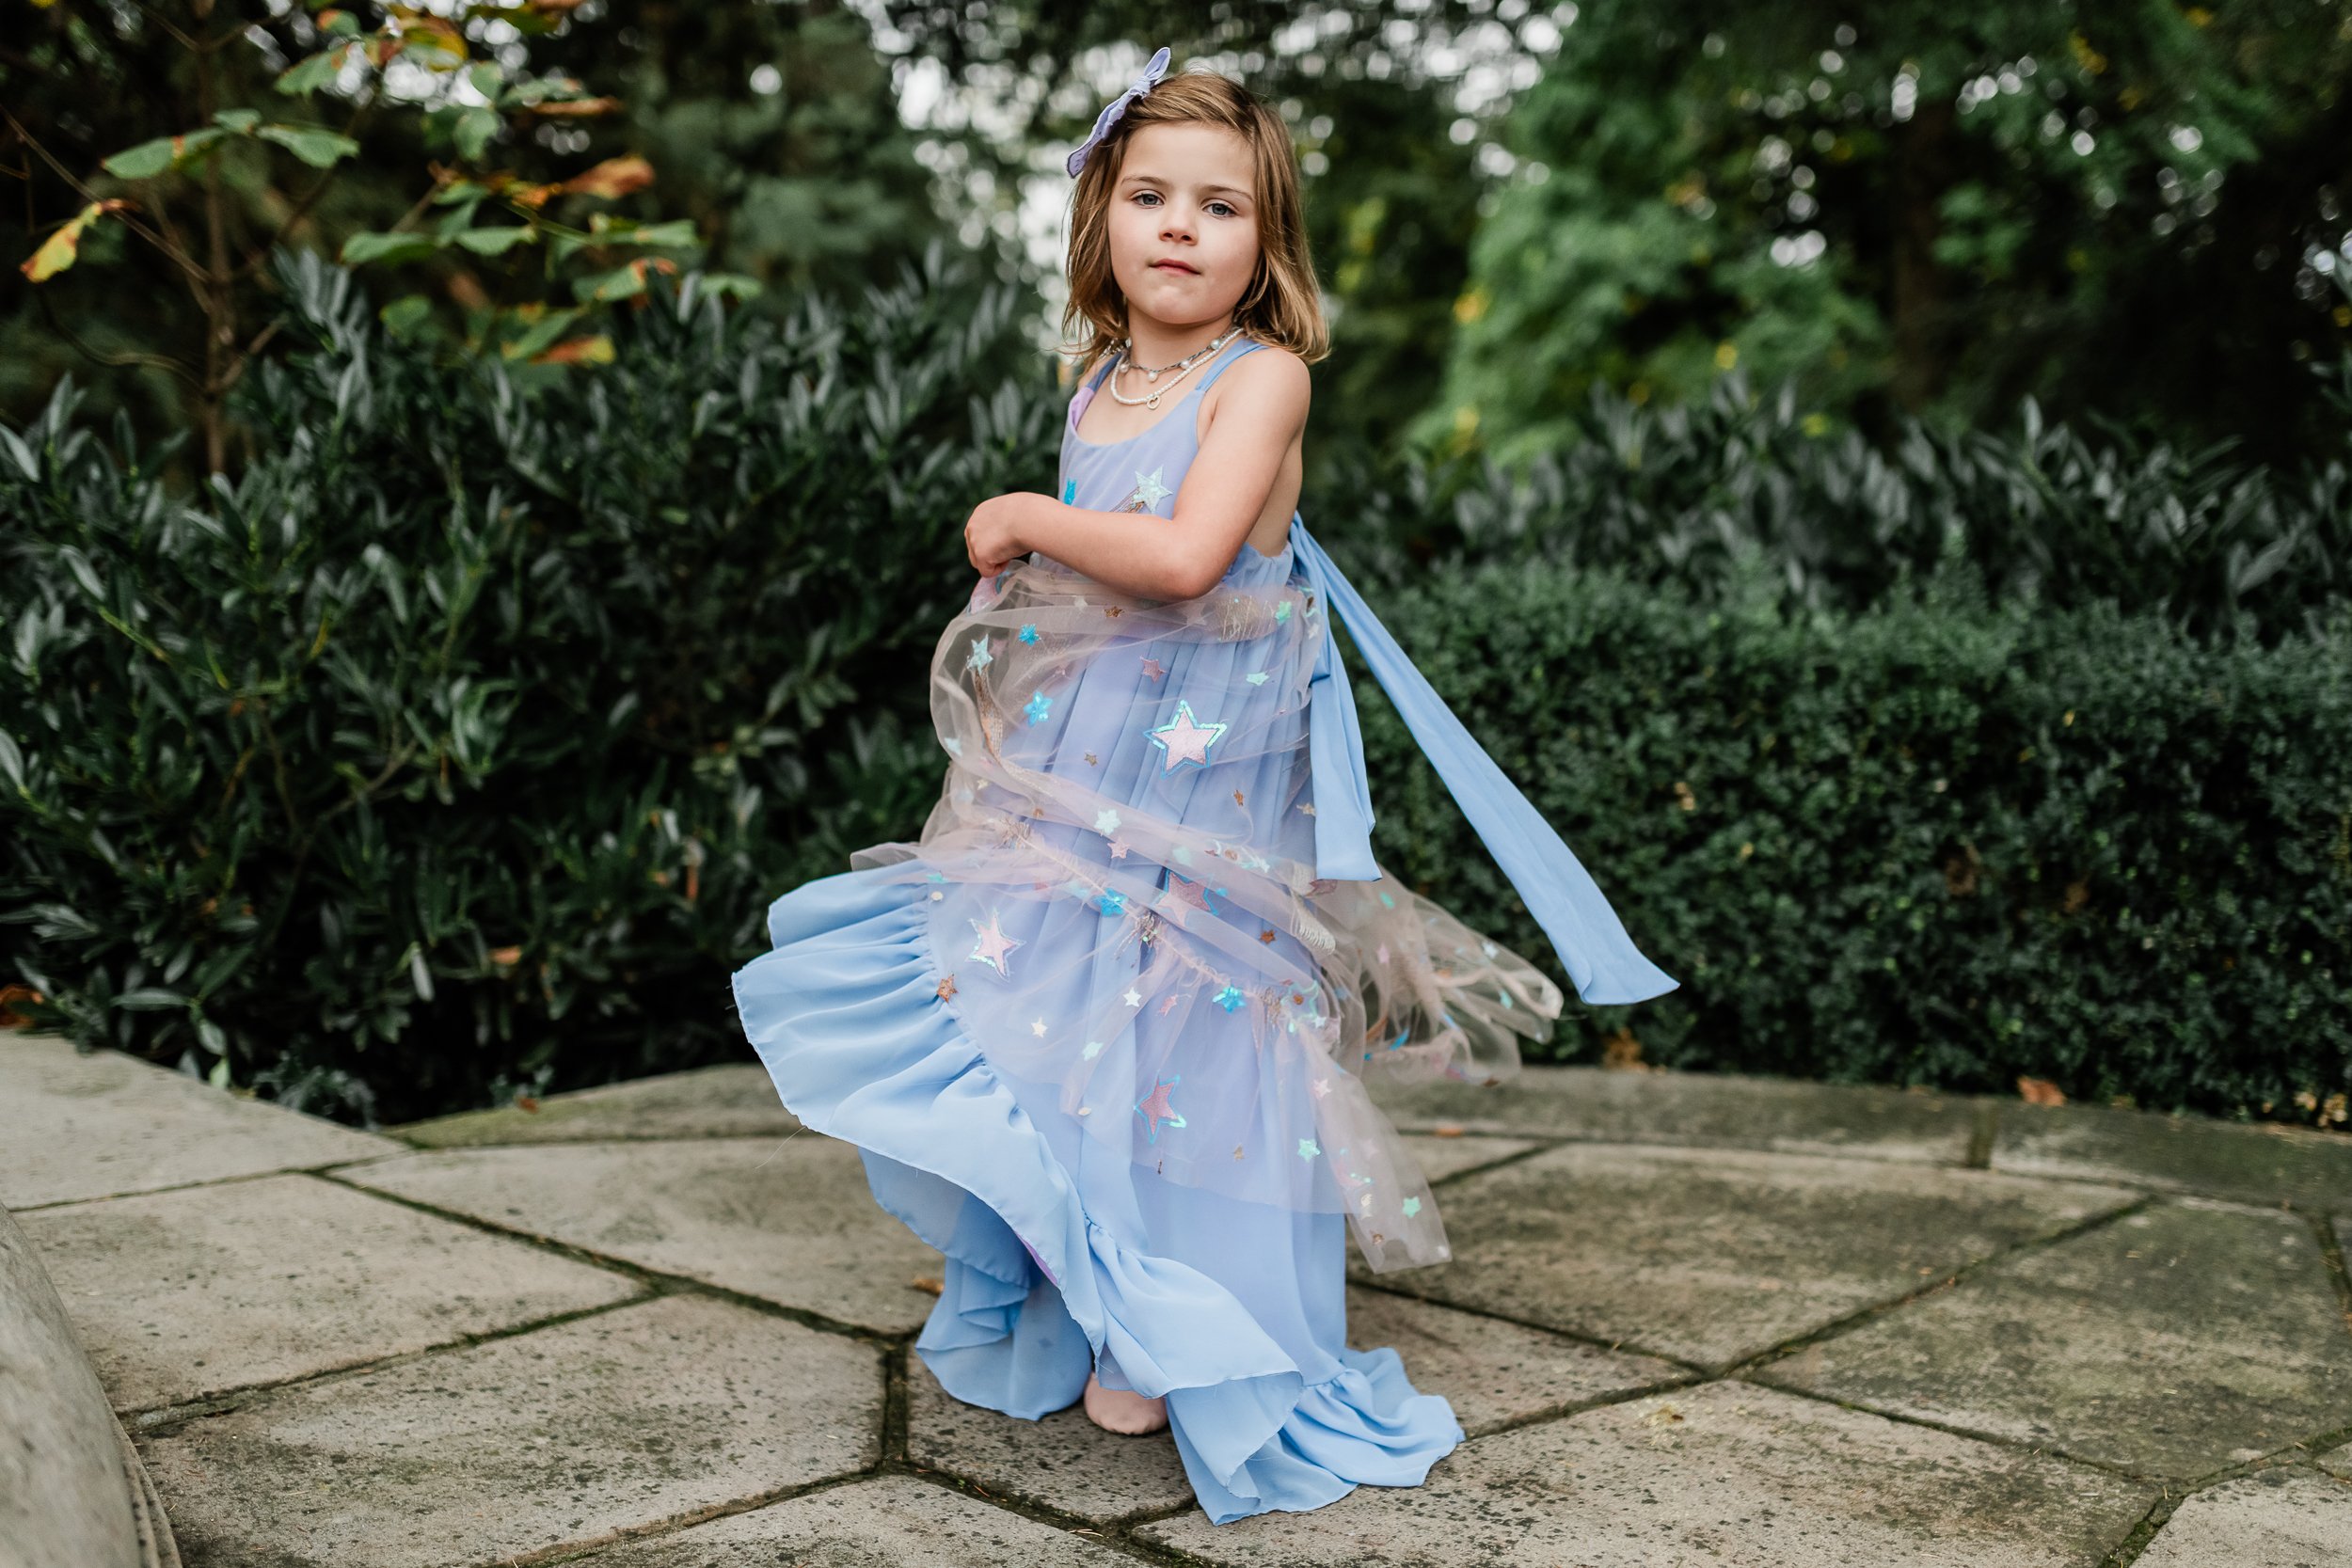  Little girl twirls in her blue princess dress. 